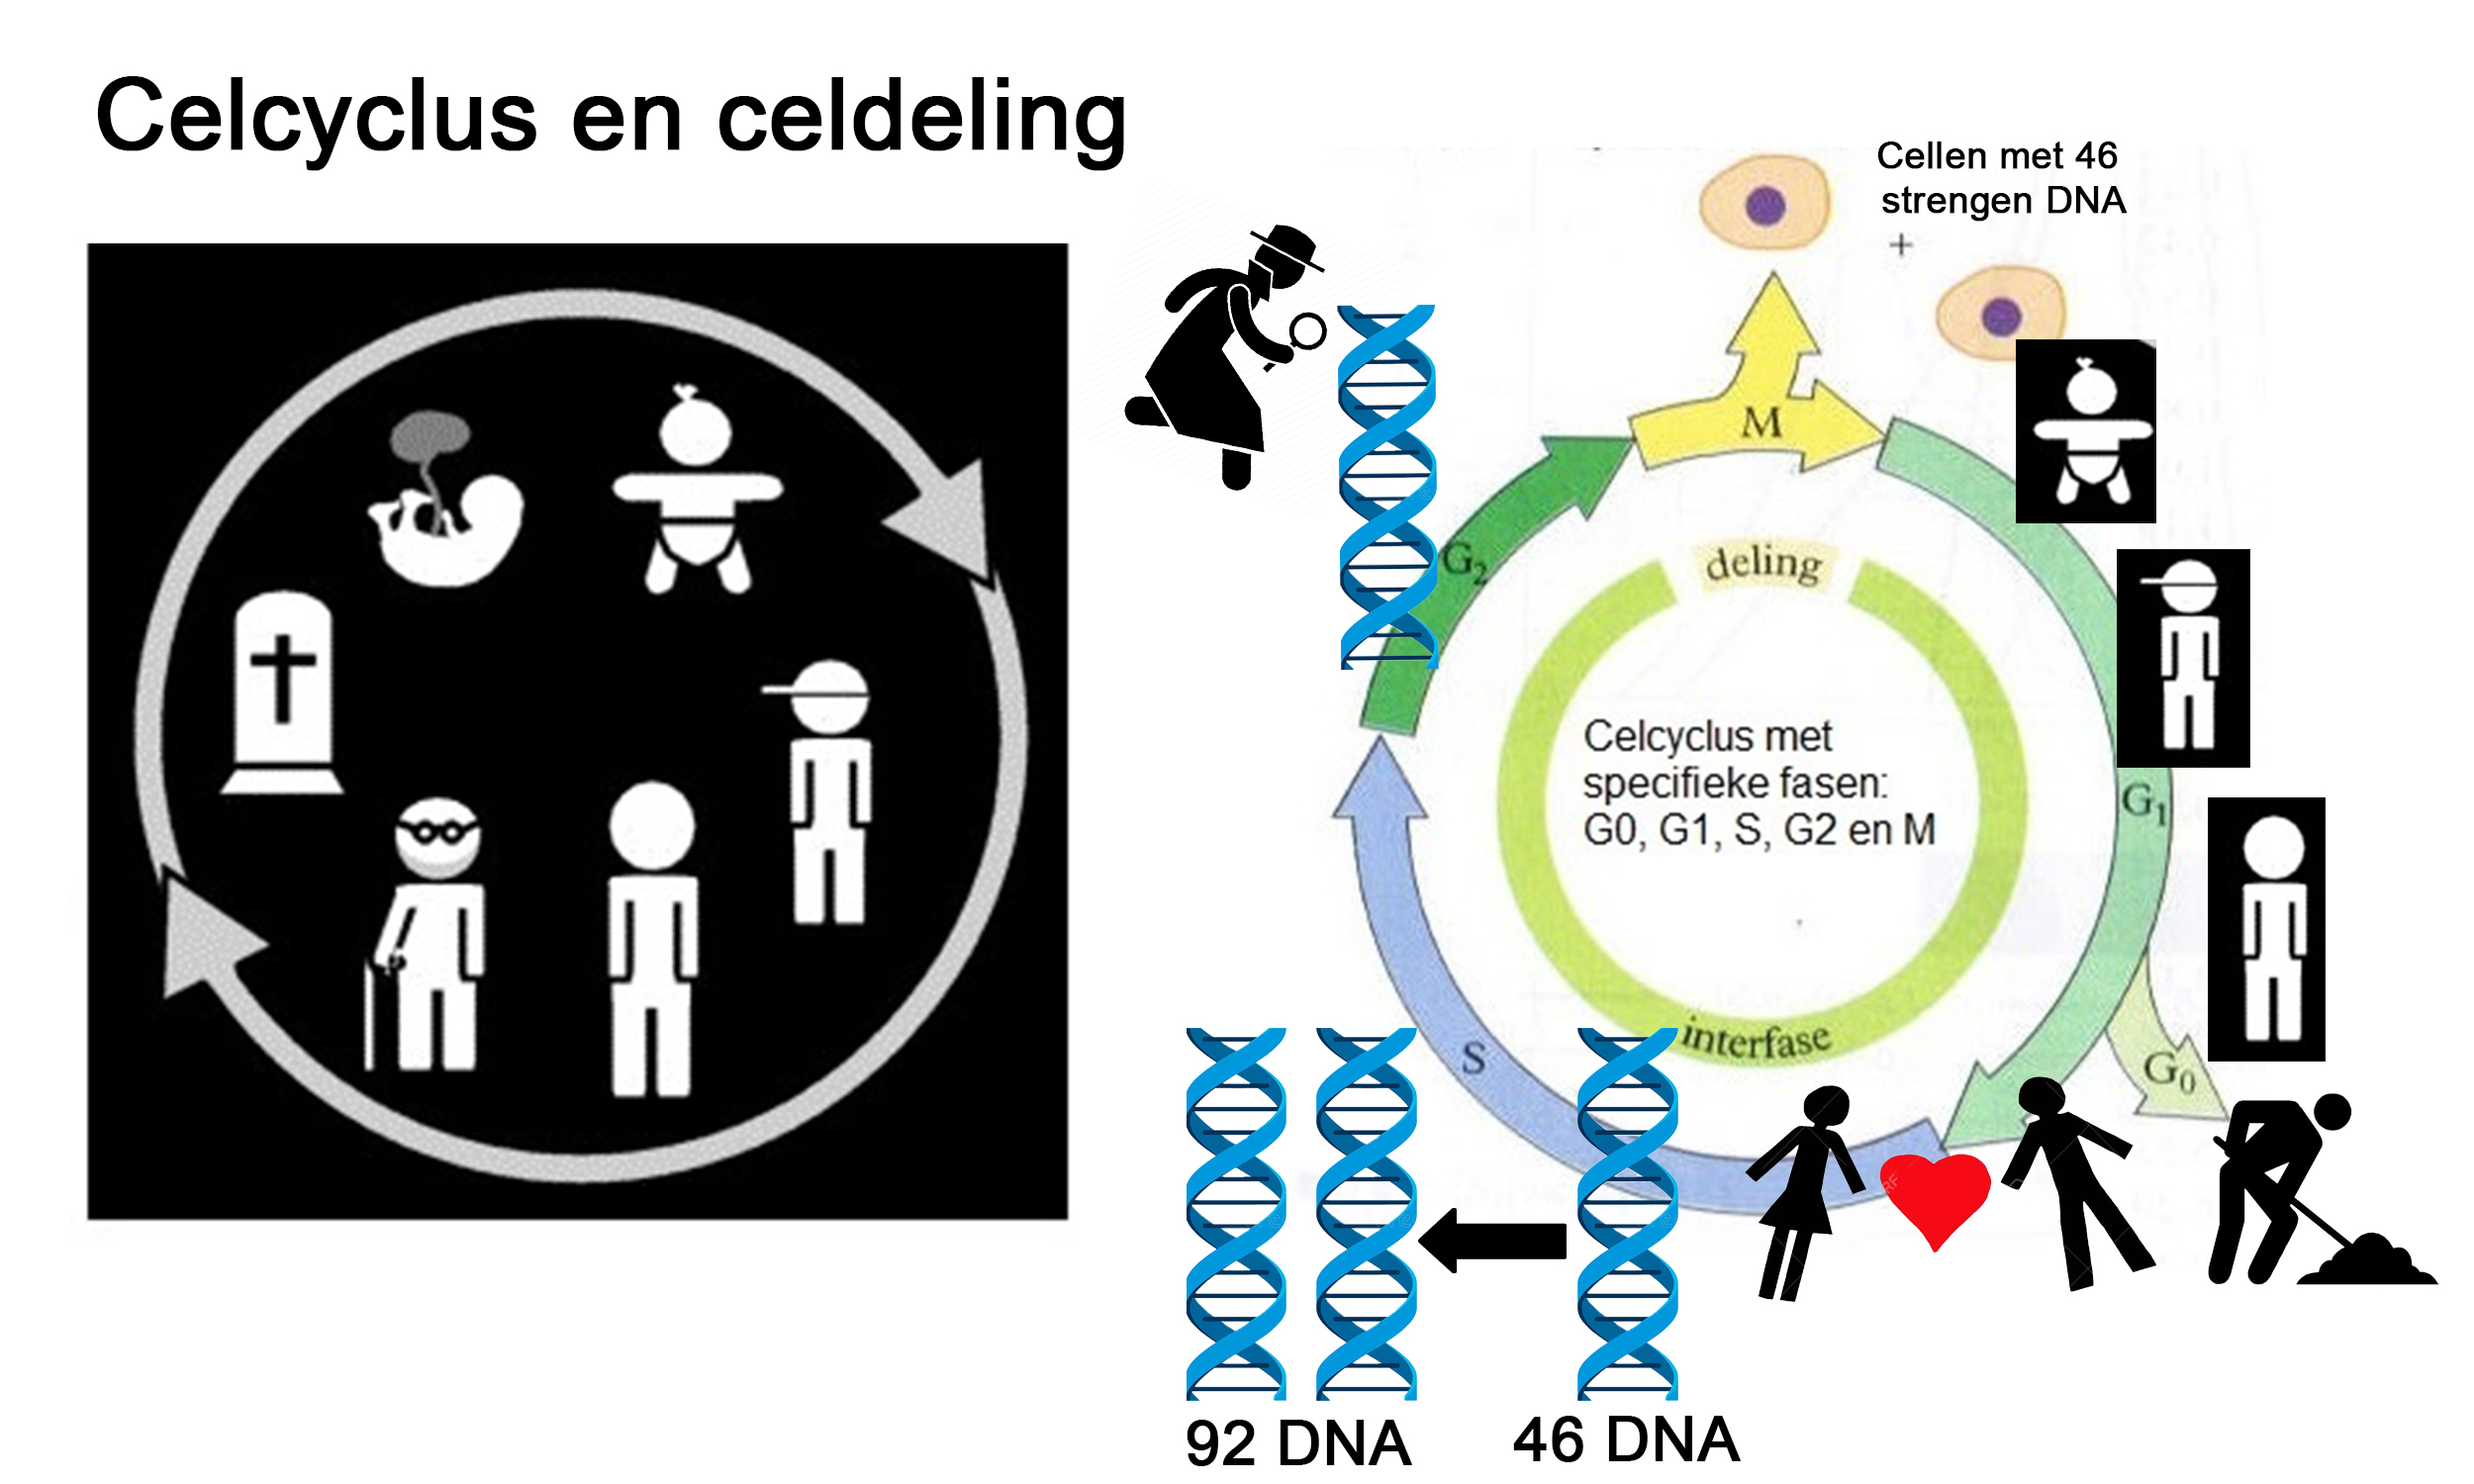 celcyclus en celdeling